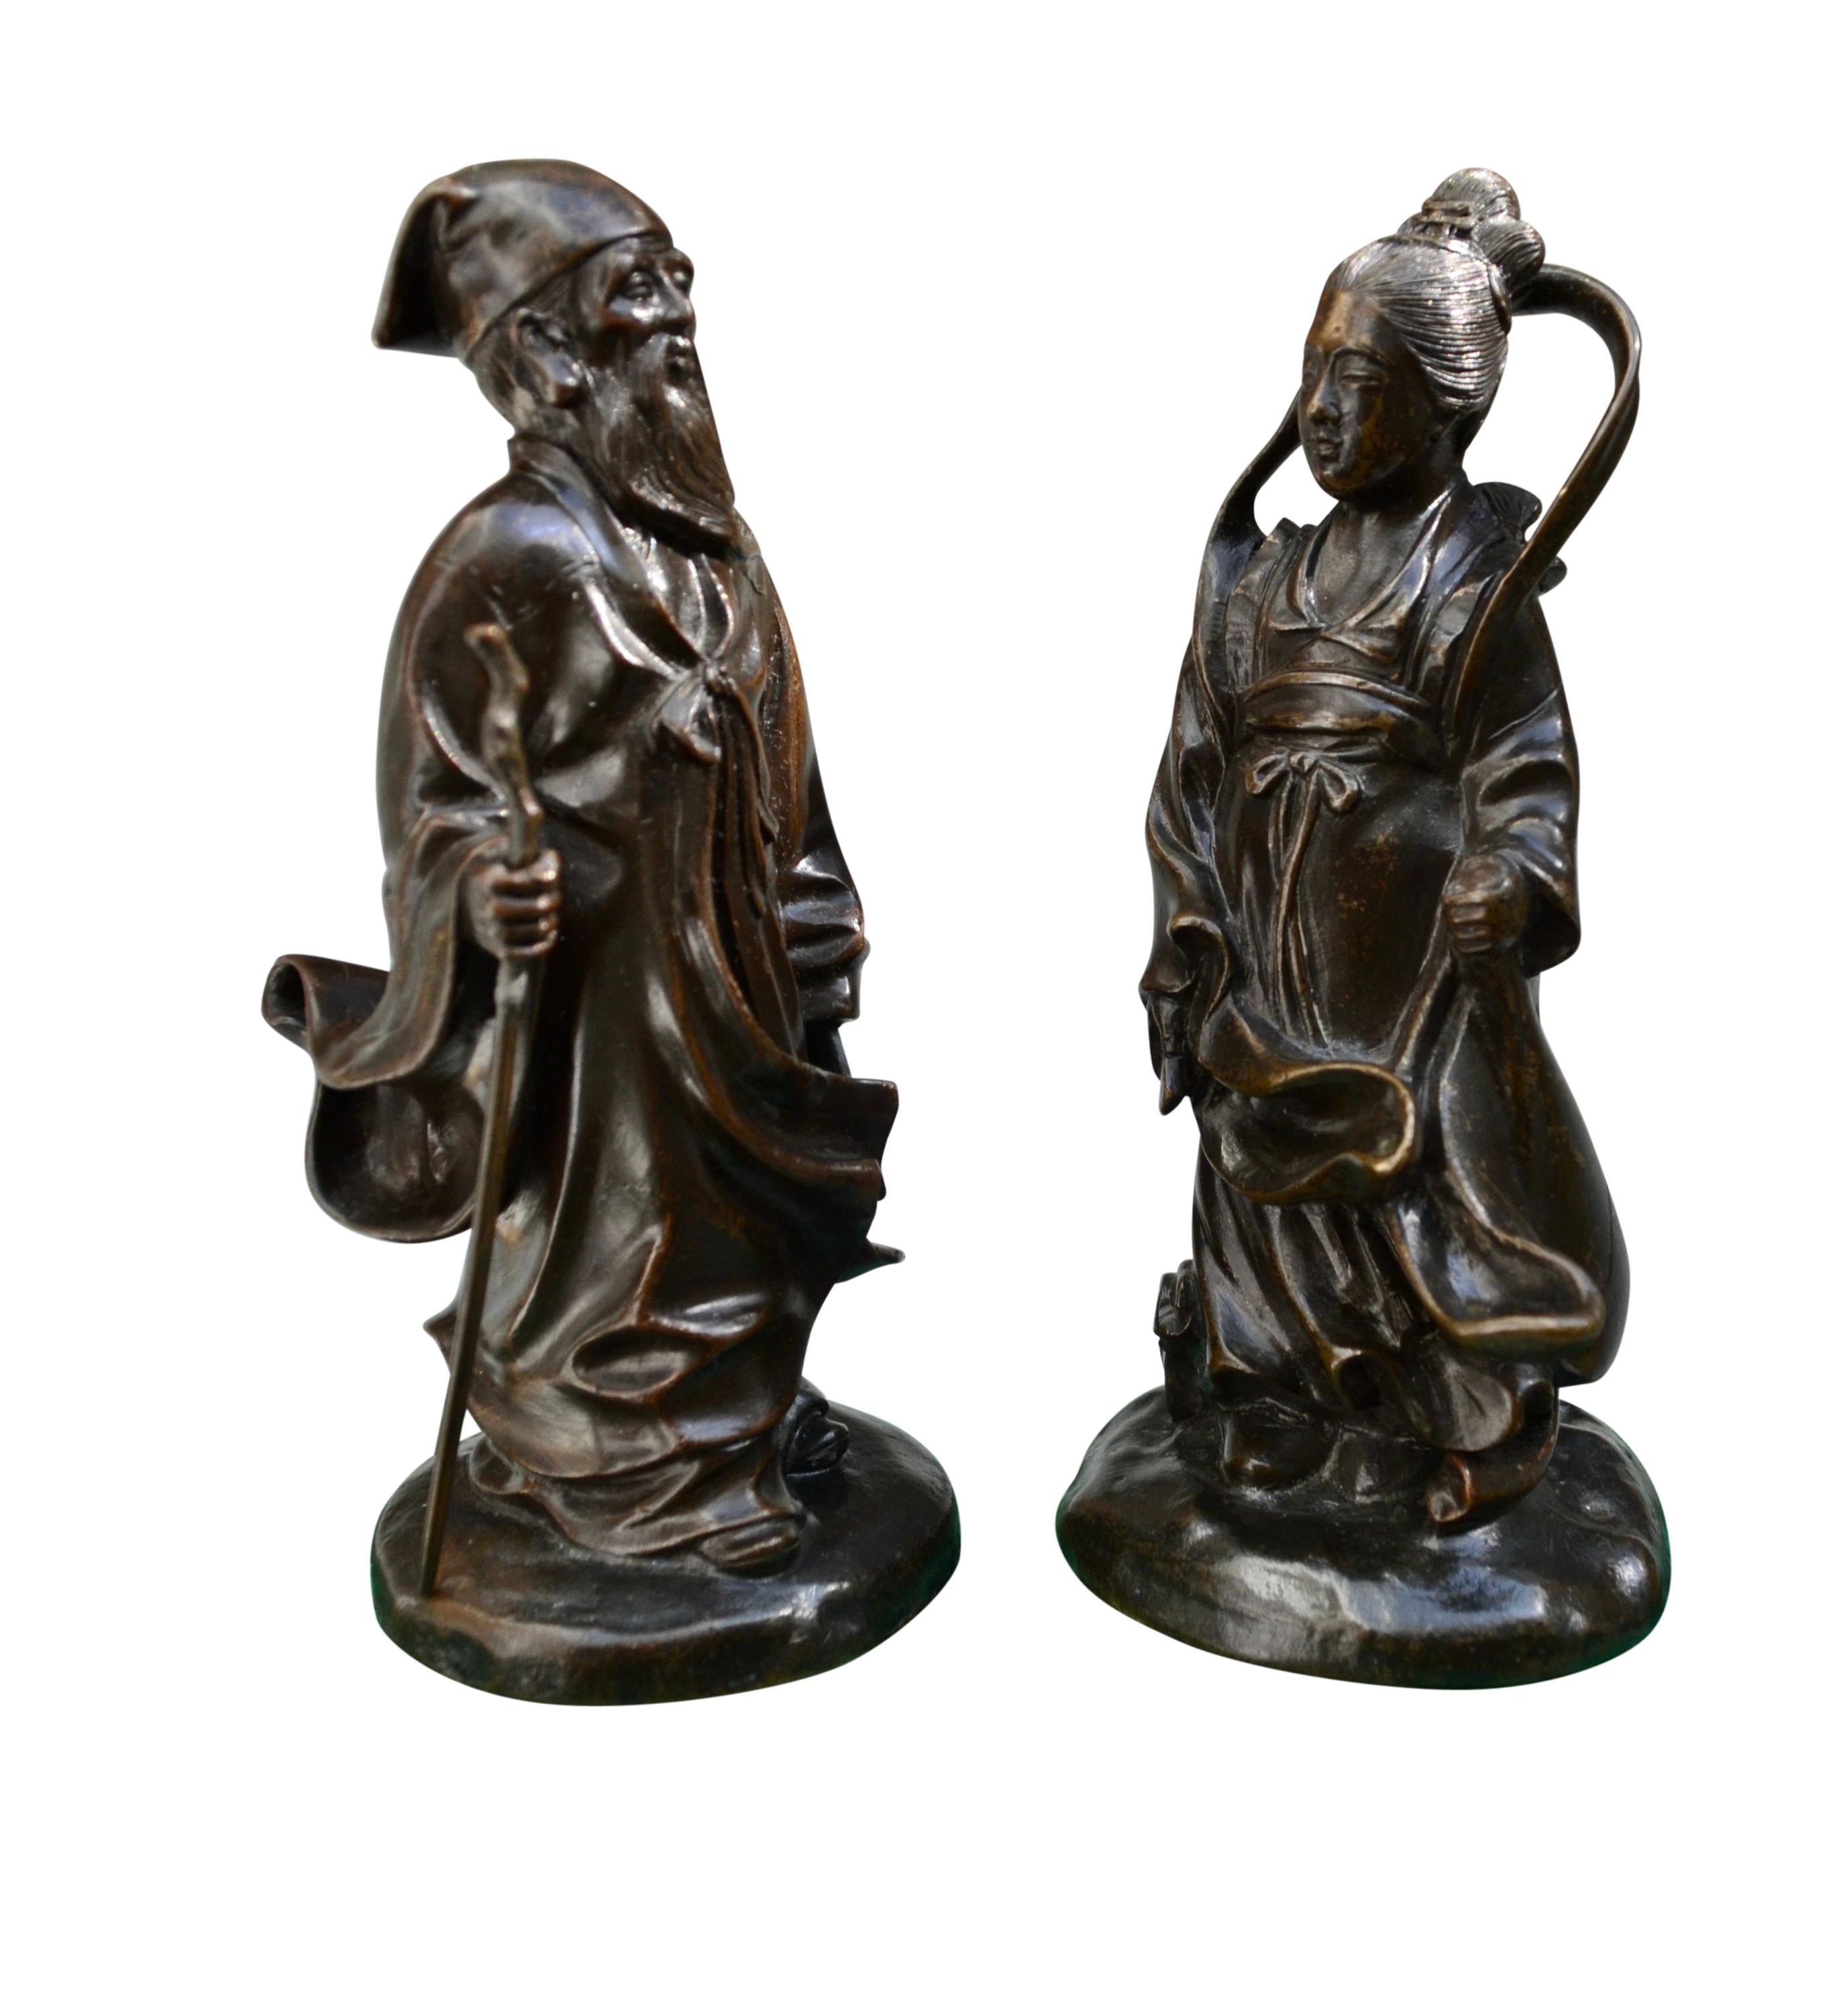 Ein Paar außergewöhnlicher kleiner patinierter Bronzegüsse einer männlichen und einer weiblichen chinesischen Gottheit oder eines Gottes, die möglicherweise Shouxing, den Gott der Langlebigkeit, der Unsterblichkeit und des Glücks, und Guan Yin, die